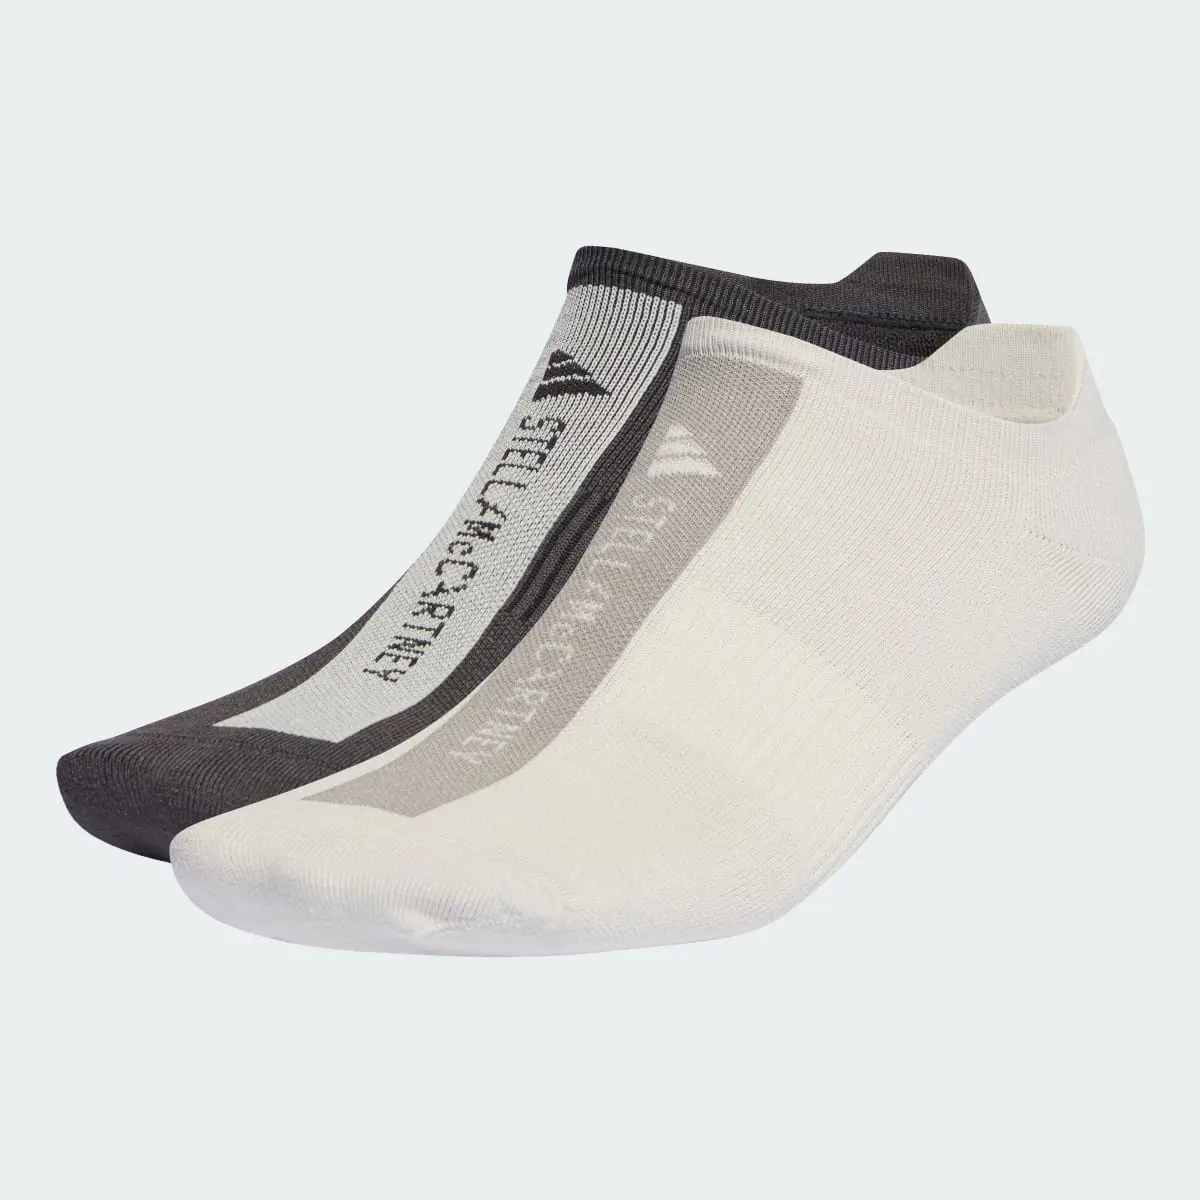 Adidas by Stella McCartney Low Socks. 2